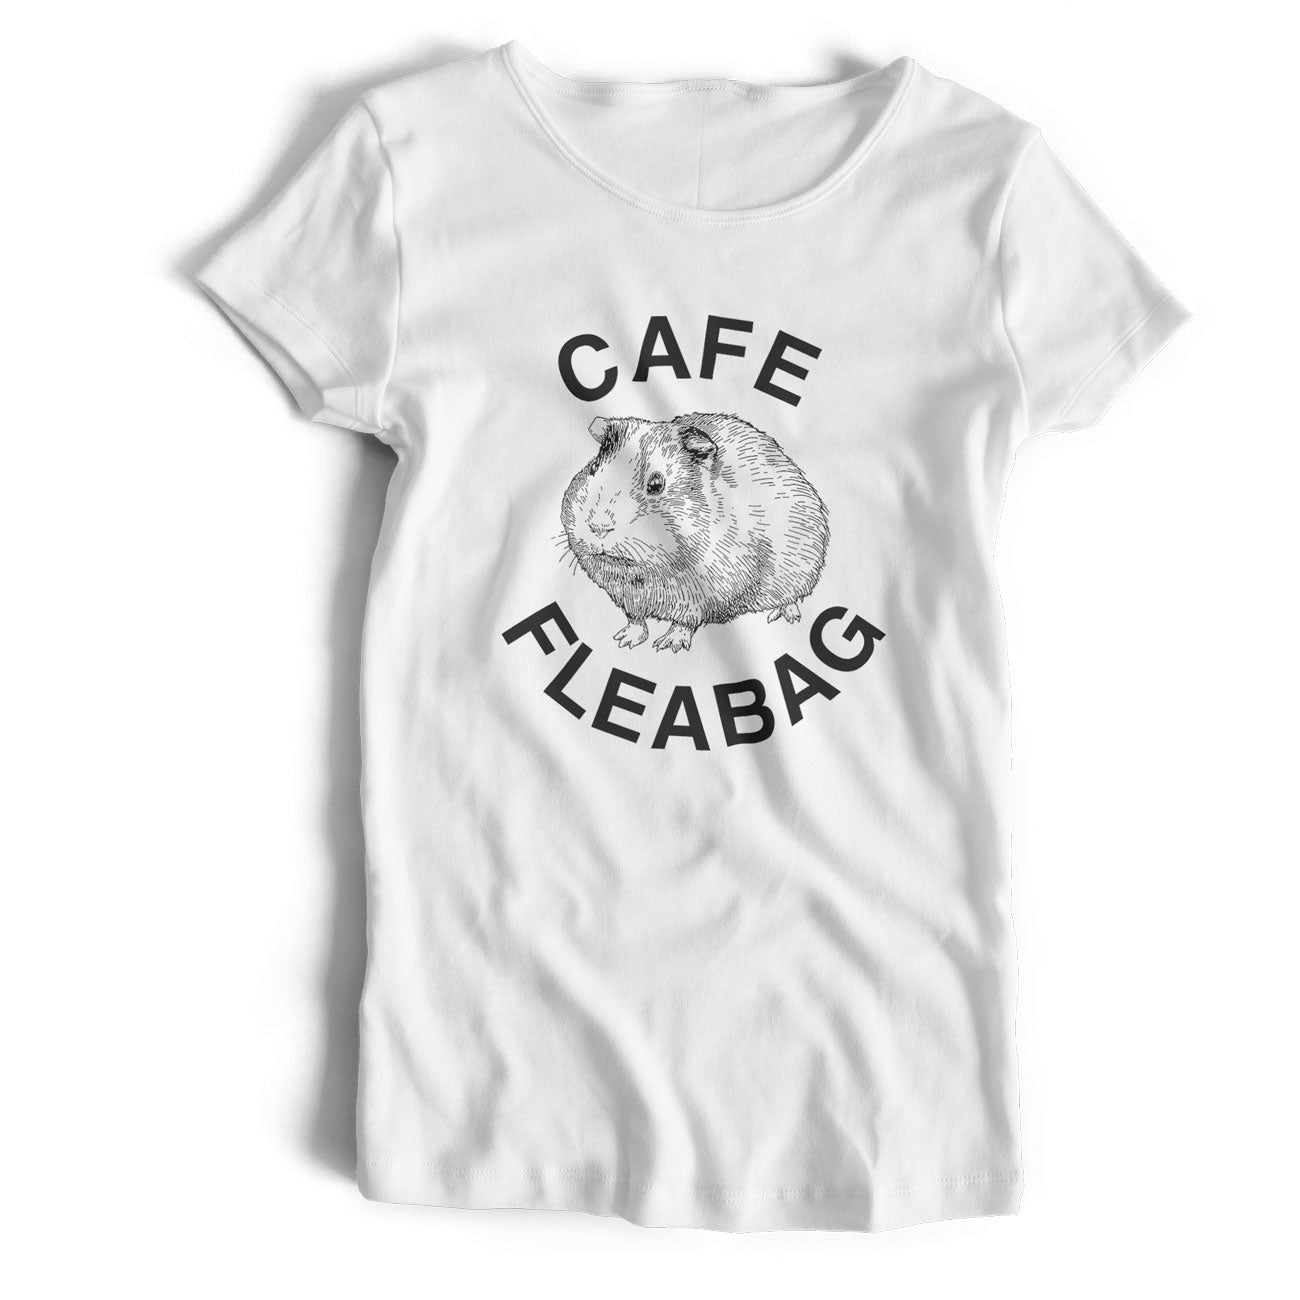 Cafe Fleabag T shirt - Guinea Pig Café Old Skool Hooligans